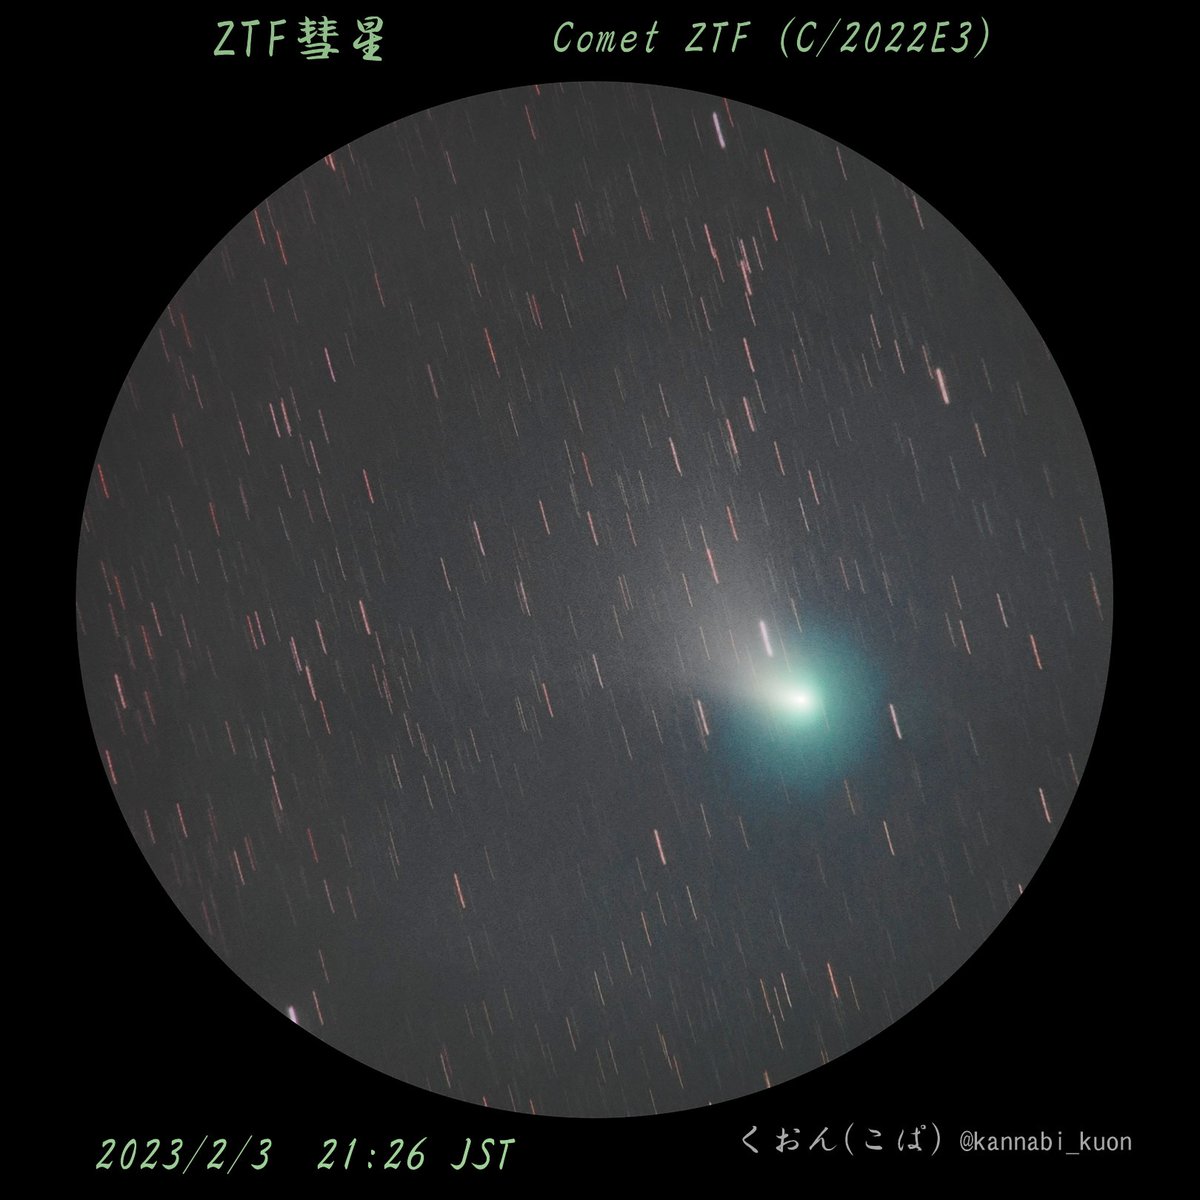 2月9日夜の遠征、最後に天体望遠鏡で撮影したZTF彗星（C/2022 E3）。

もう月が昇ってだいぶ経った後でカブリが強く、ピントも追い込み不足だったので放置していたけど、一応スタックしてみたらイオンテイルが写っているようだったので、せっかくなのでちゃんと仕上げた(^_^;)

#ZTF彗星 #CometZTF